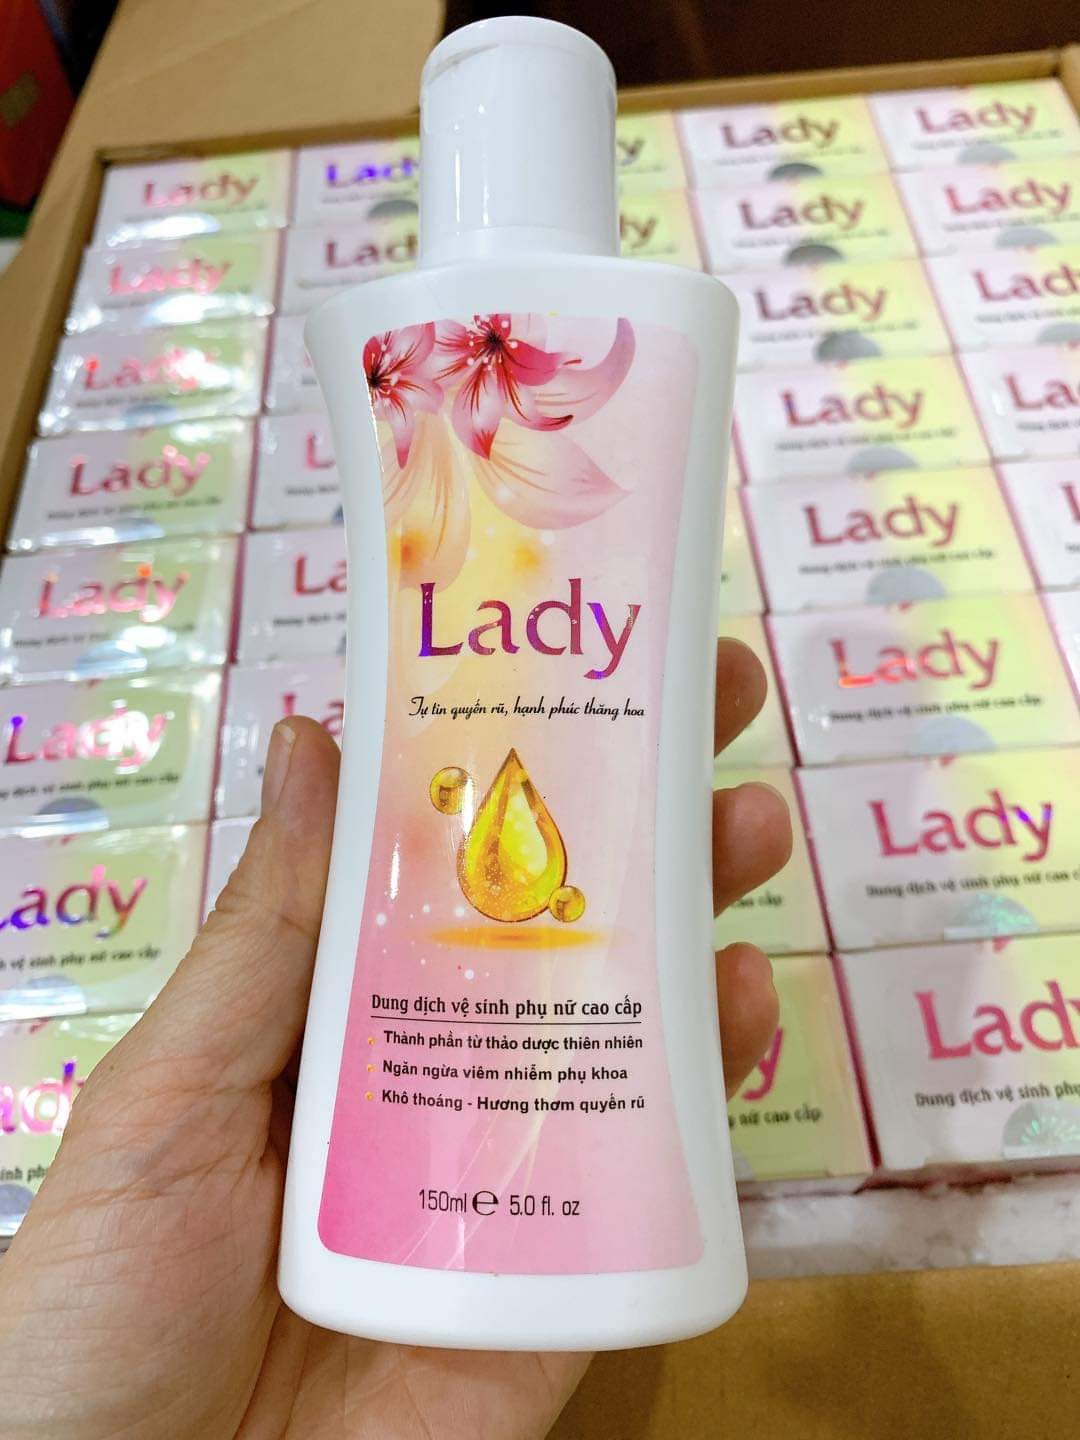 Dung dịch vệ sinh phụ nữ cao cấp Lady công ty Hồng Tâm chính hãng